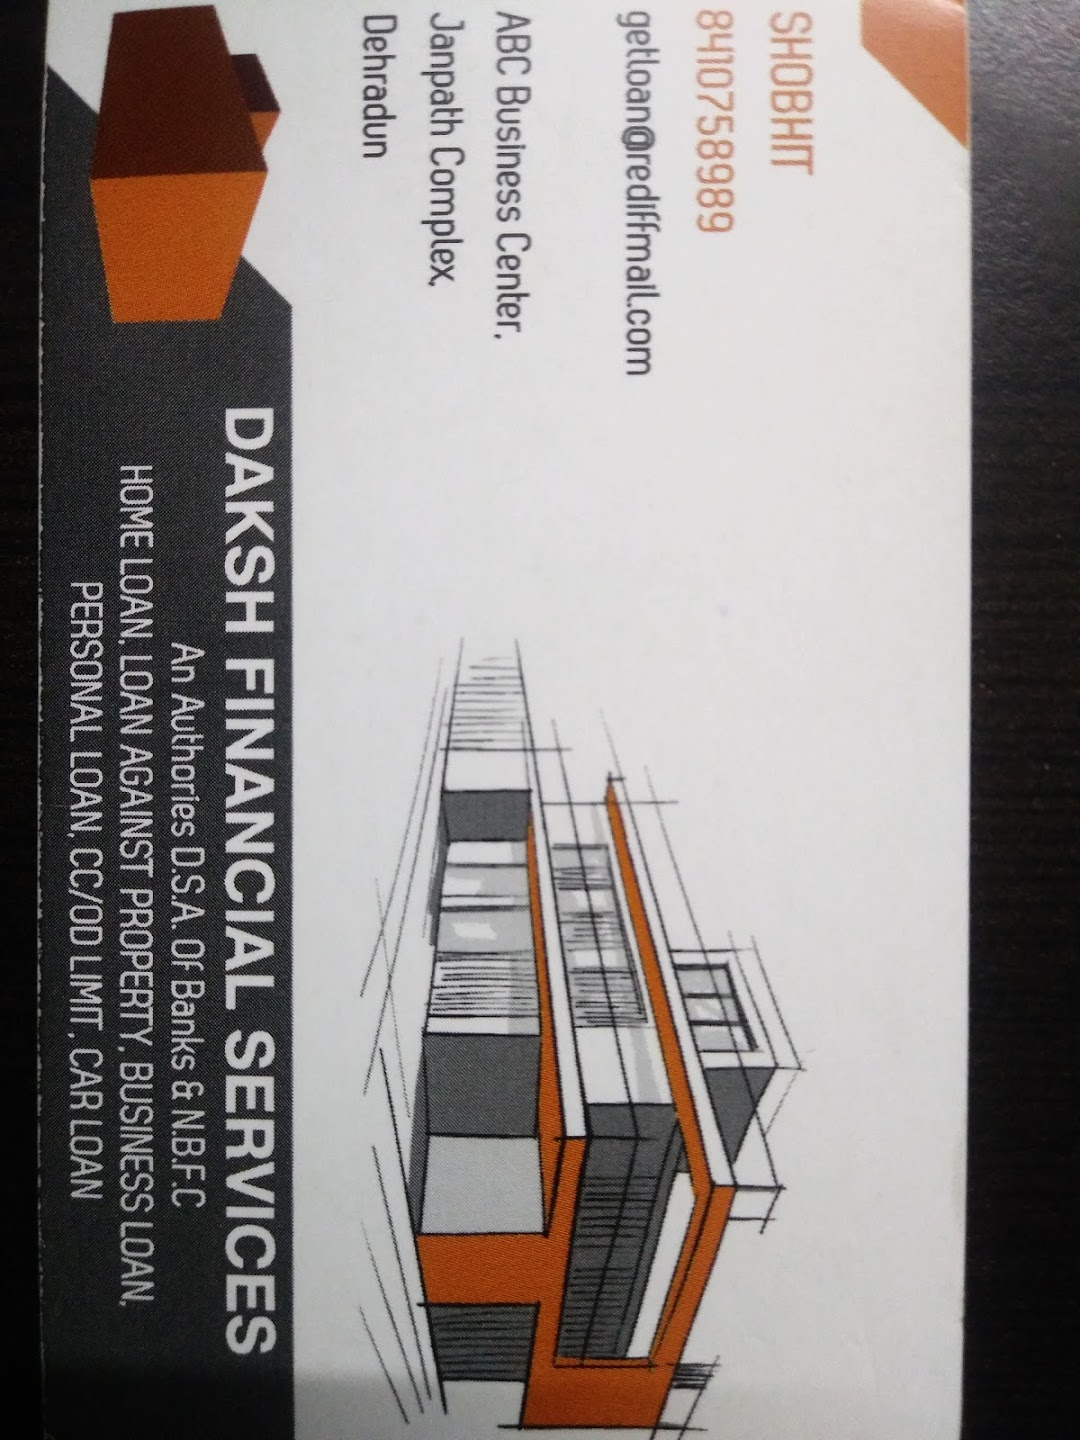 Daksh Financial Services